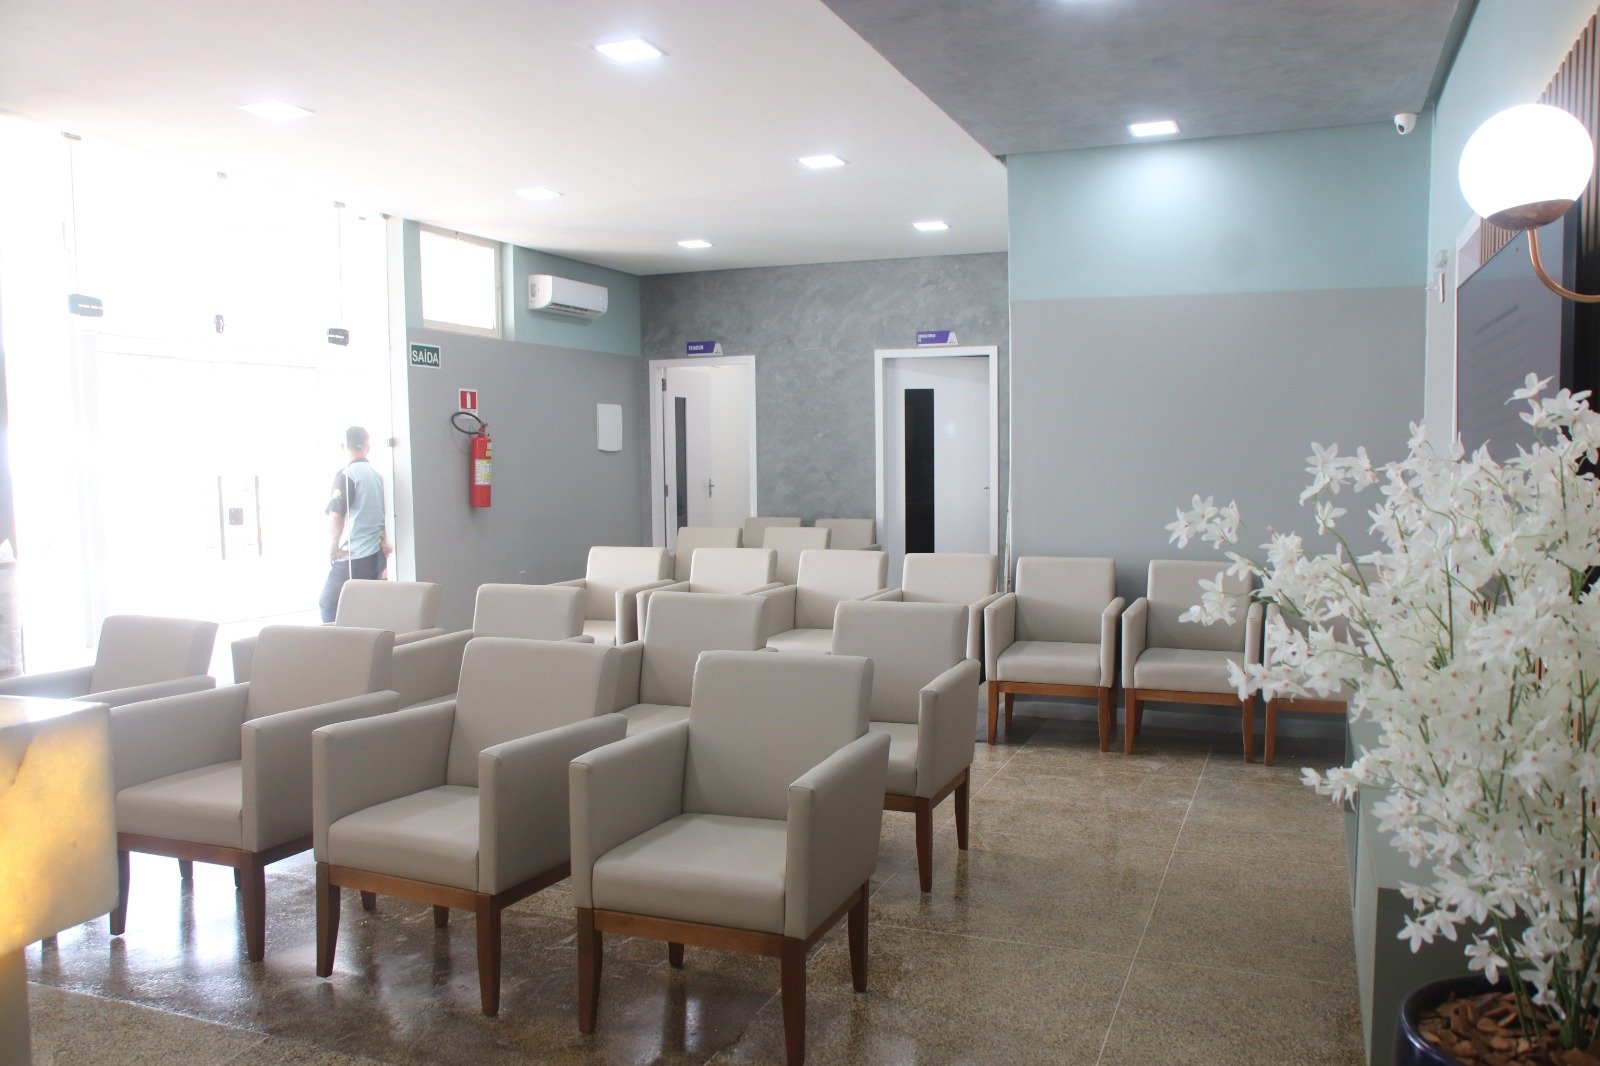 Maura Jorge reinaugura hospital com equipamentos modernos e sistema informatizado